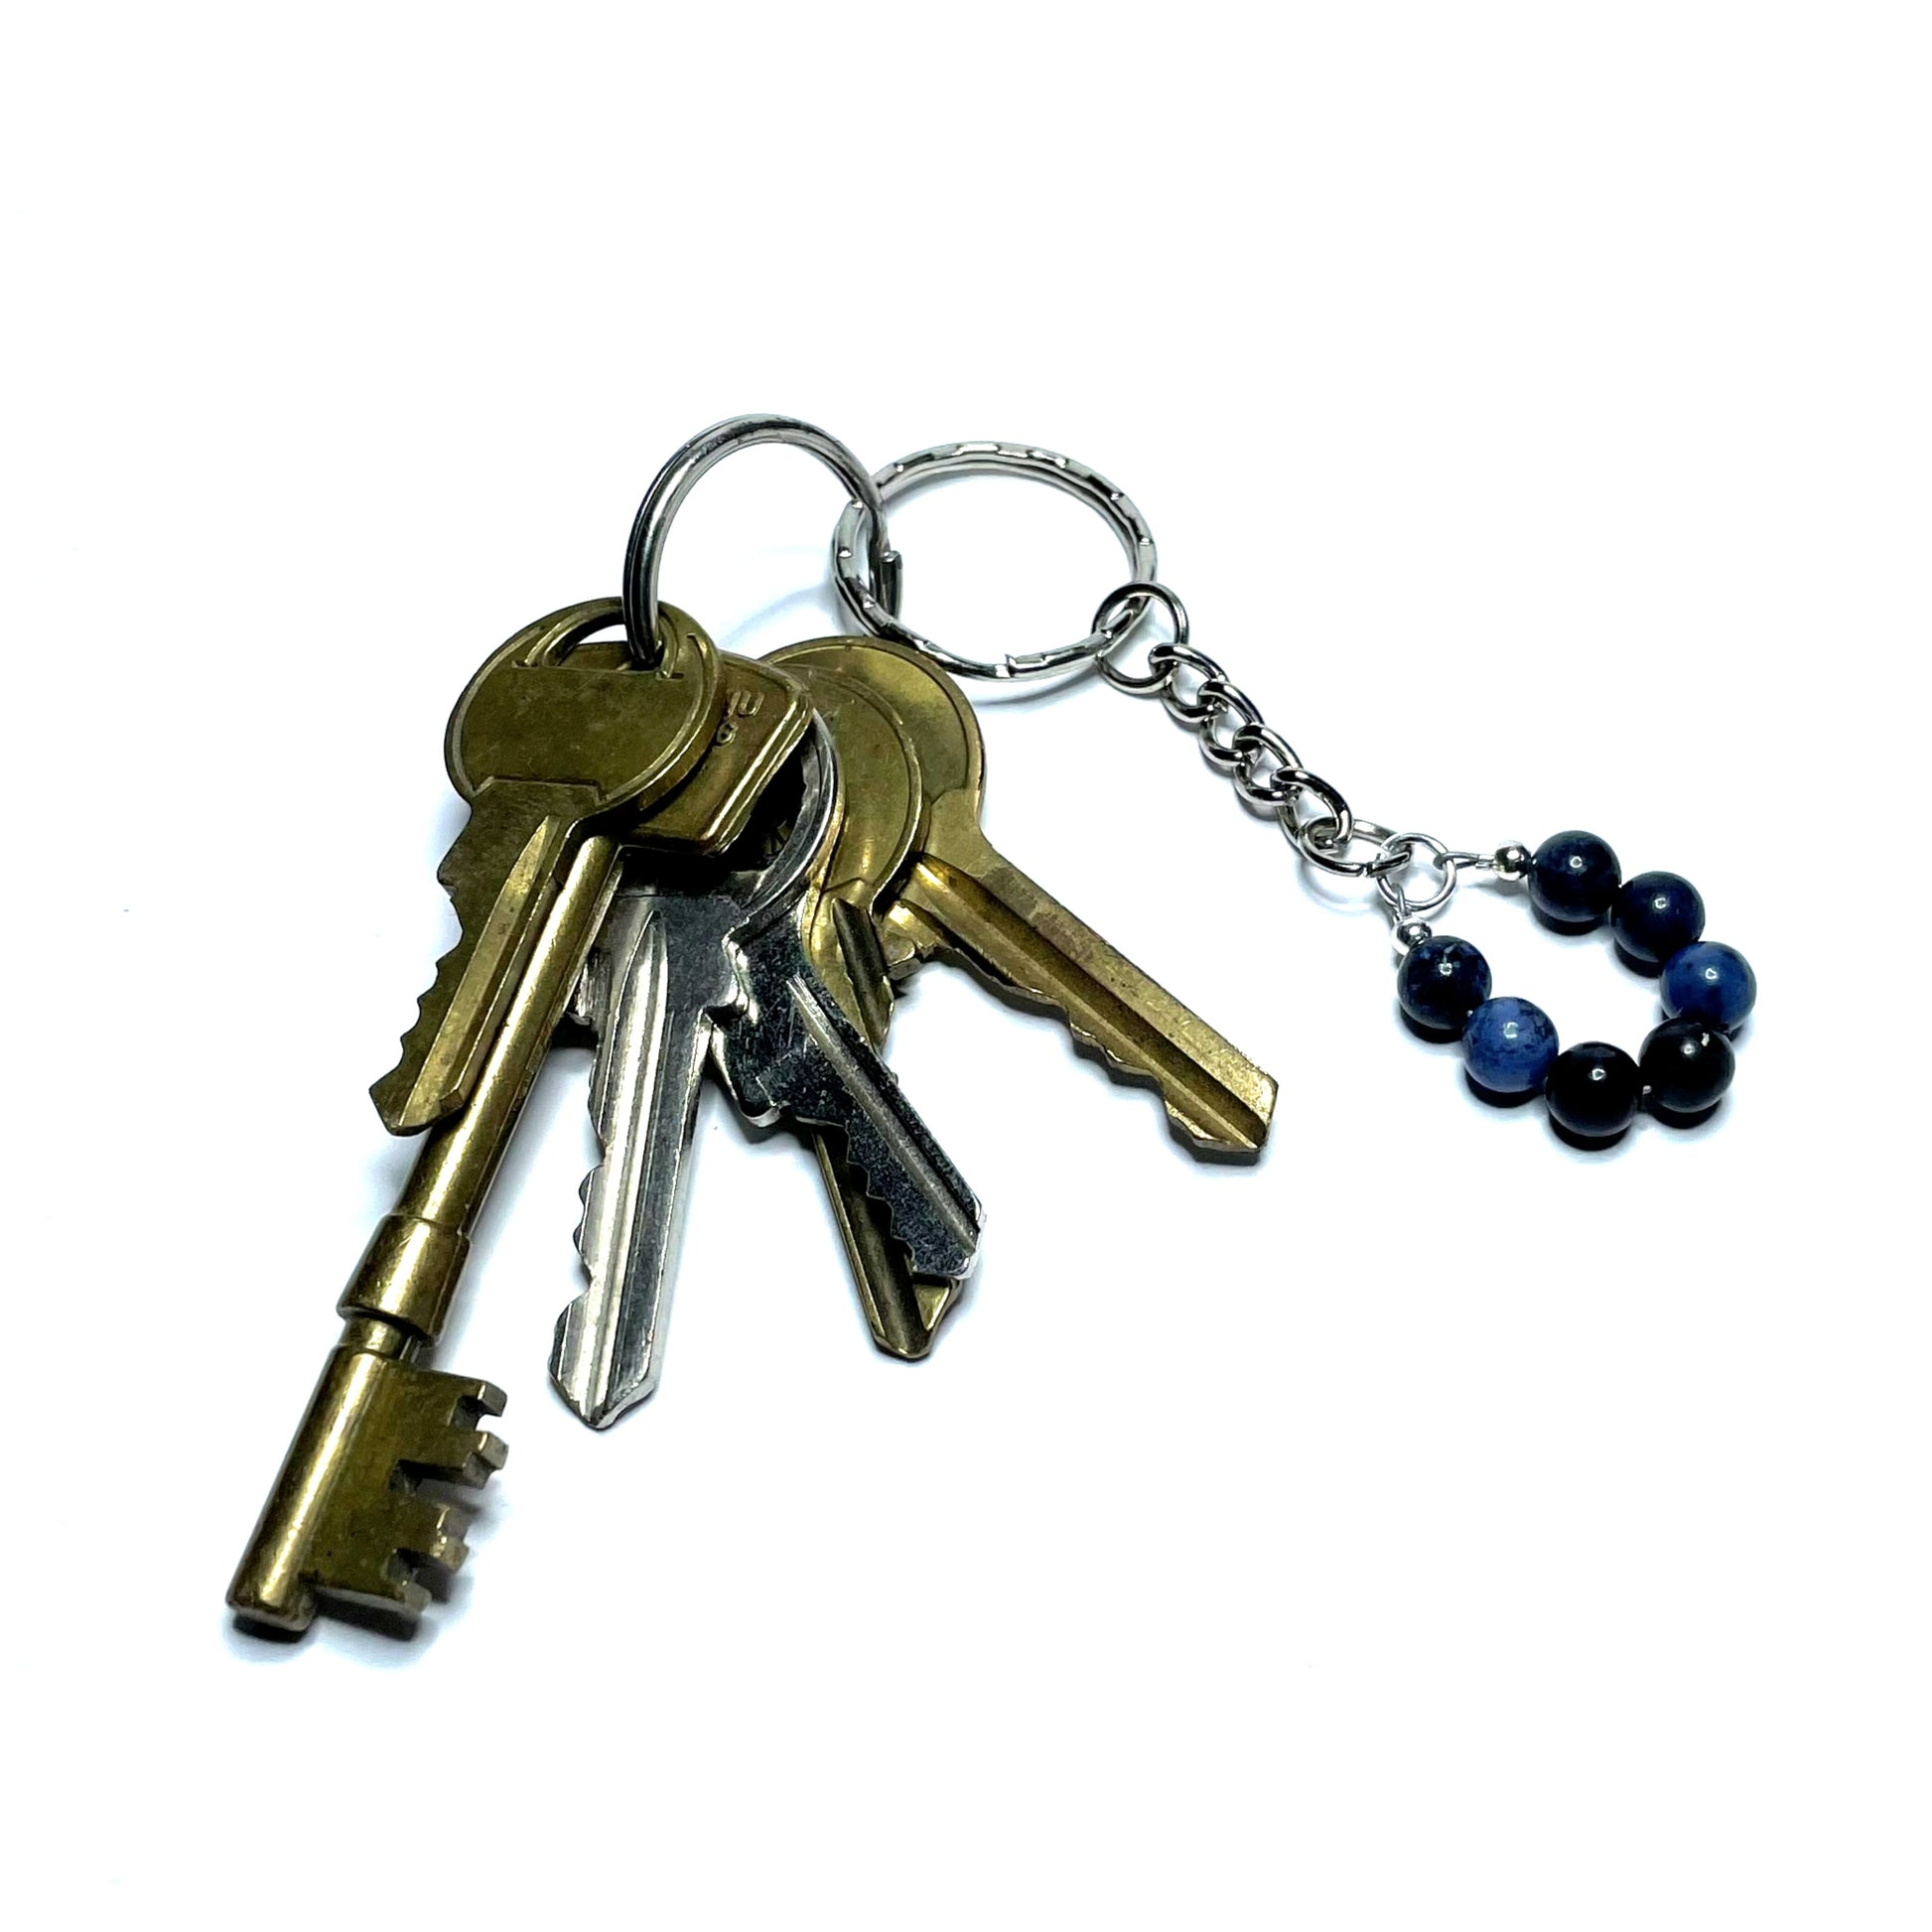 Dumortierite gemstone keychain with keys